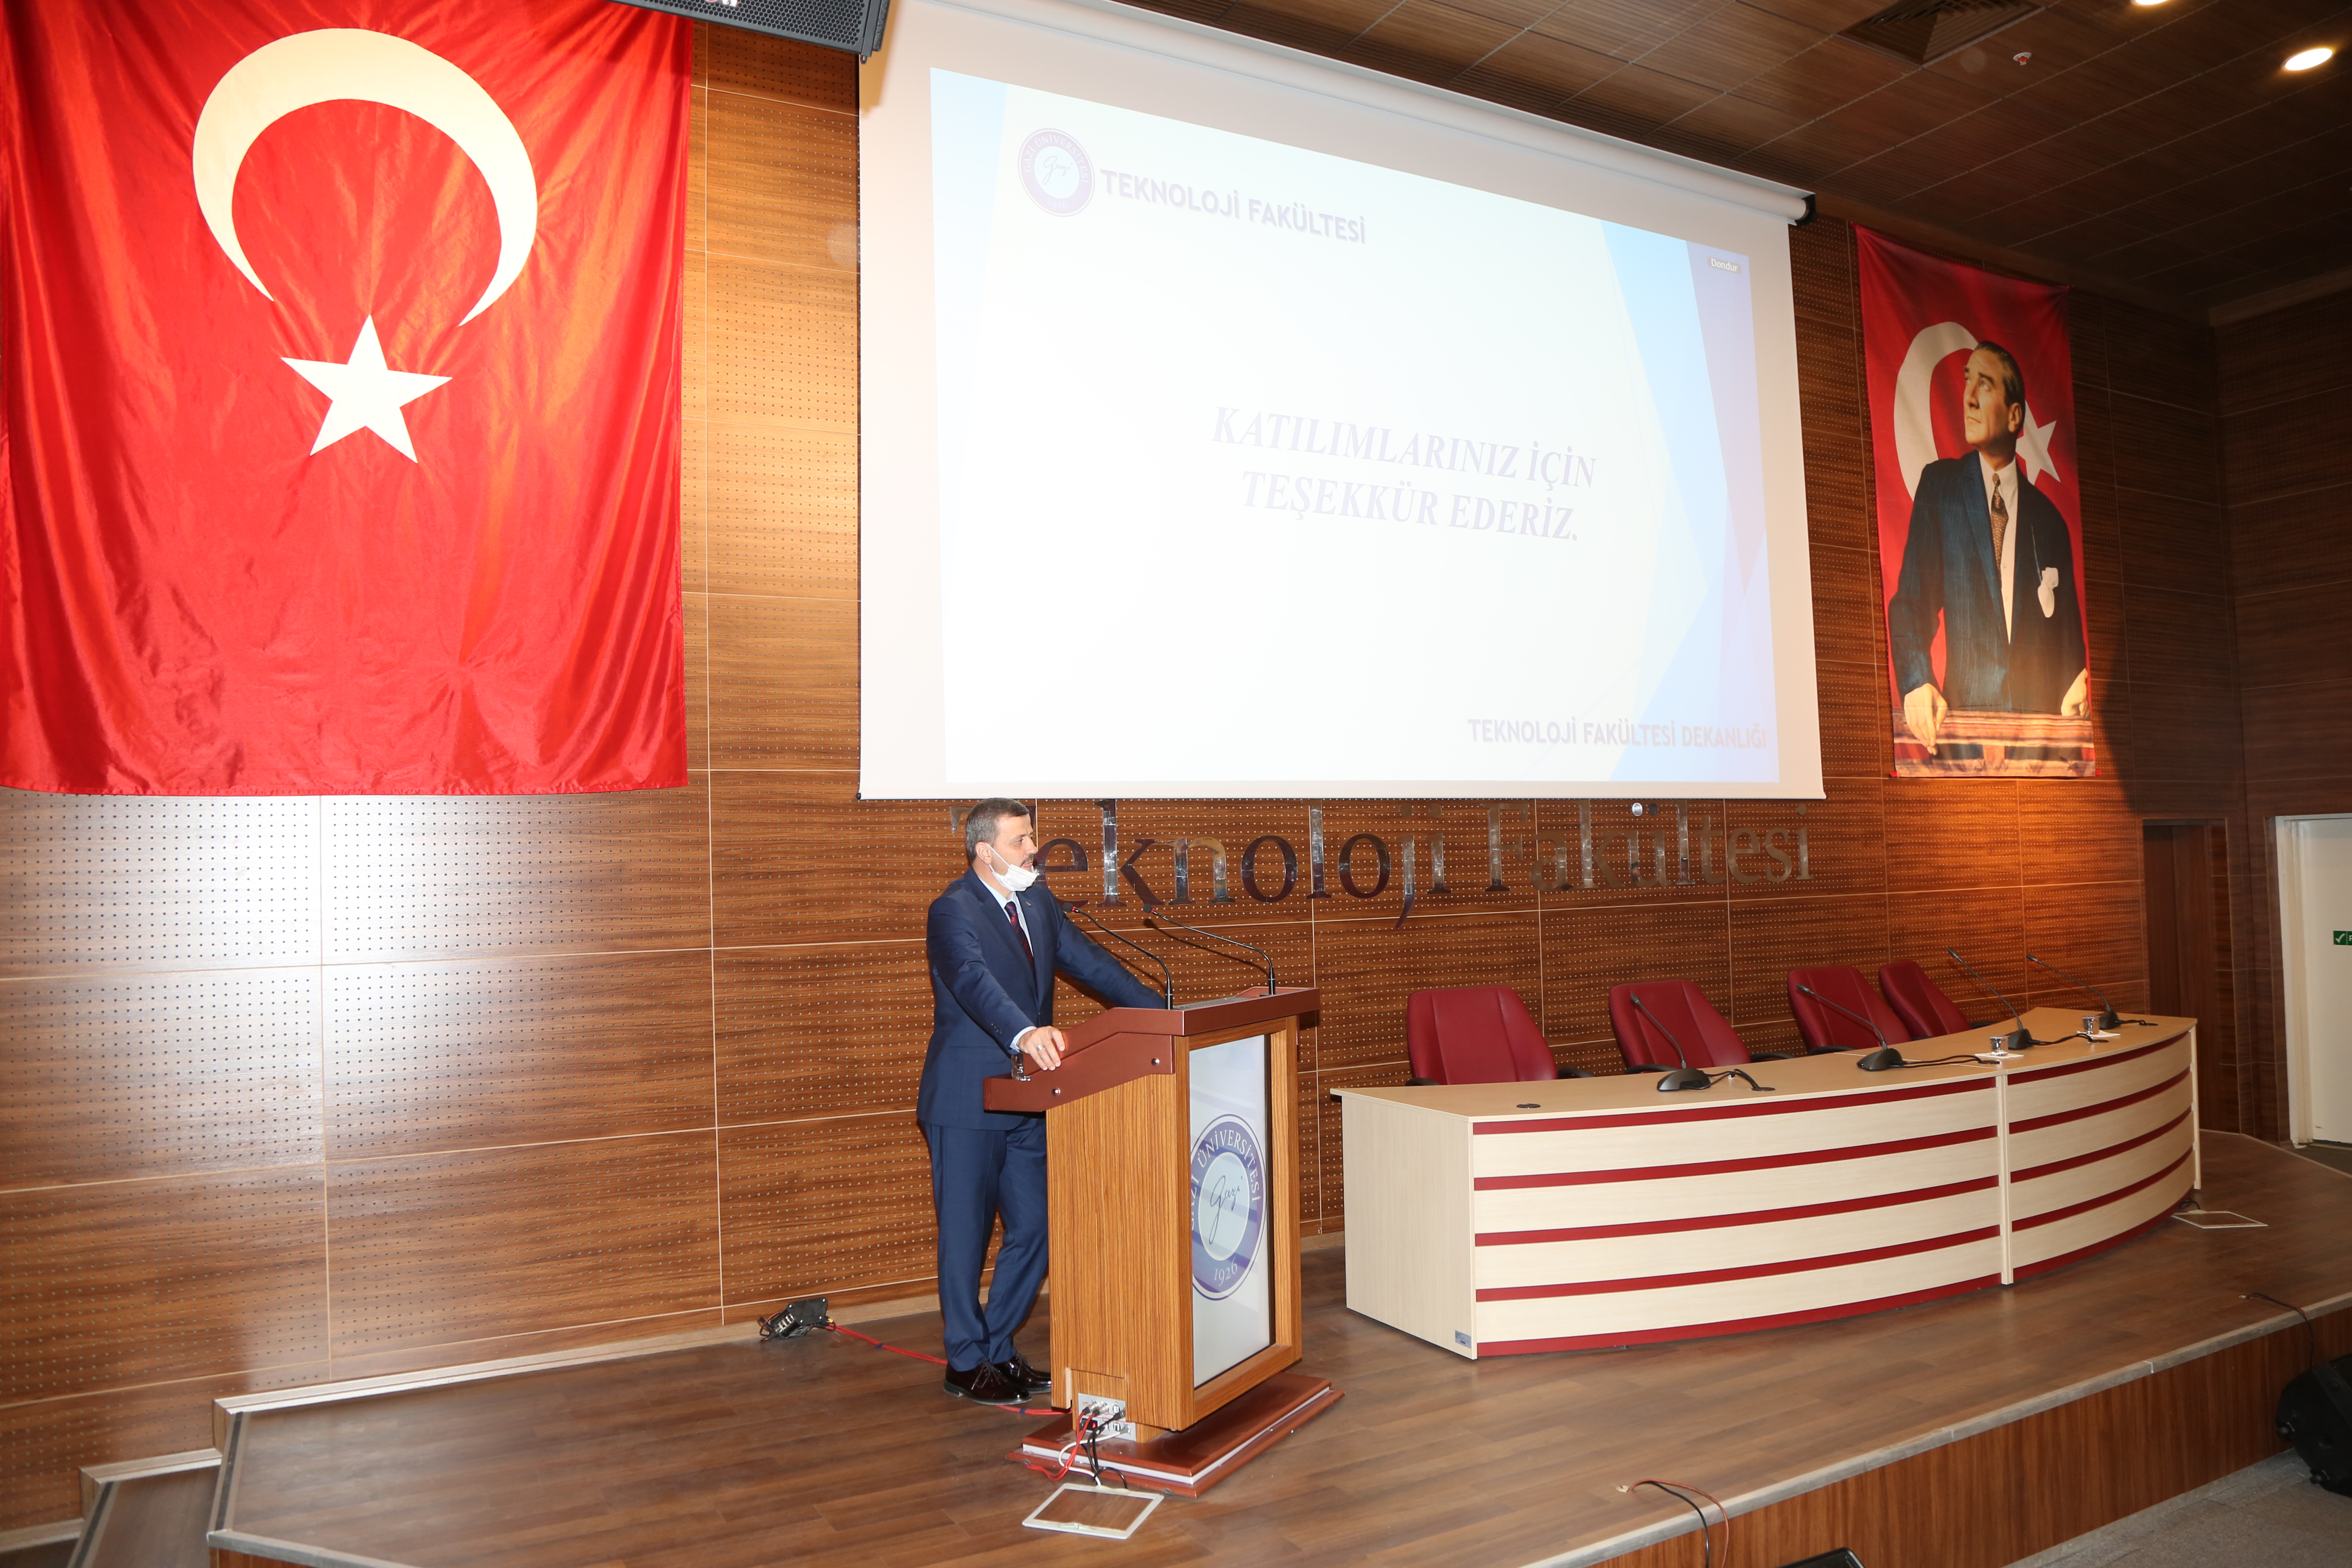 Rektörümüz Prof. Dr. Musa Yıldız, Teknoloji Fakültesi Akademik Genel Kurul Toplantısına Katıldı